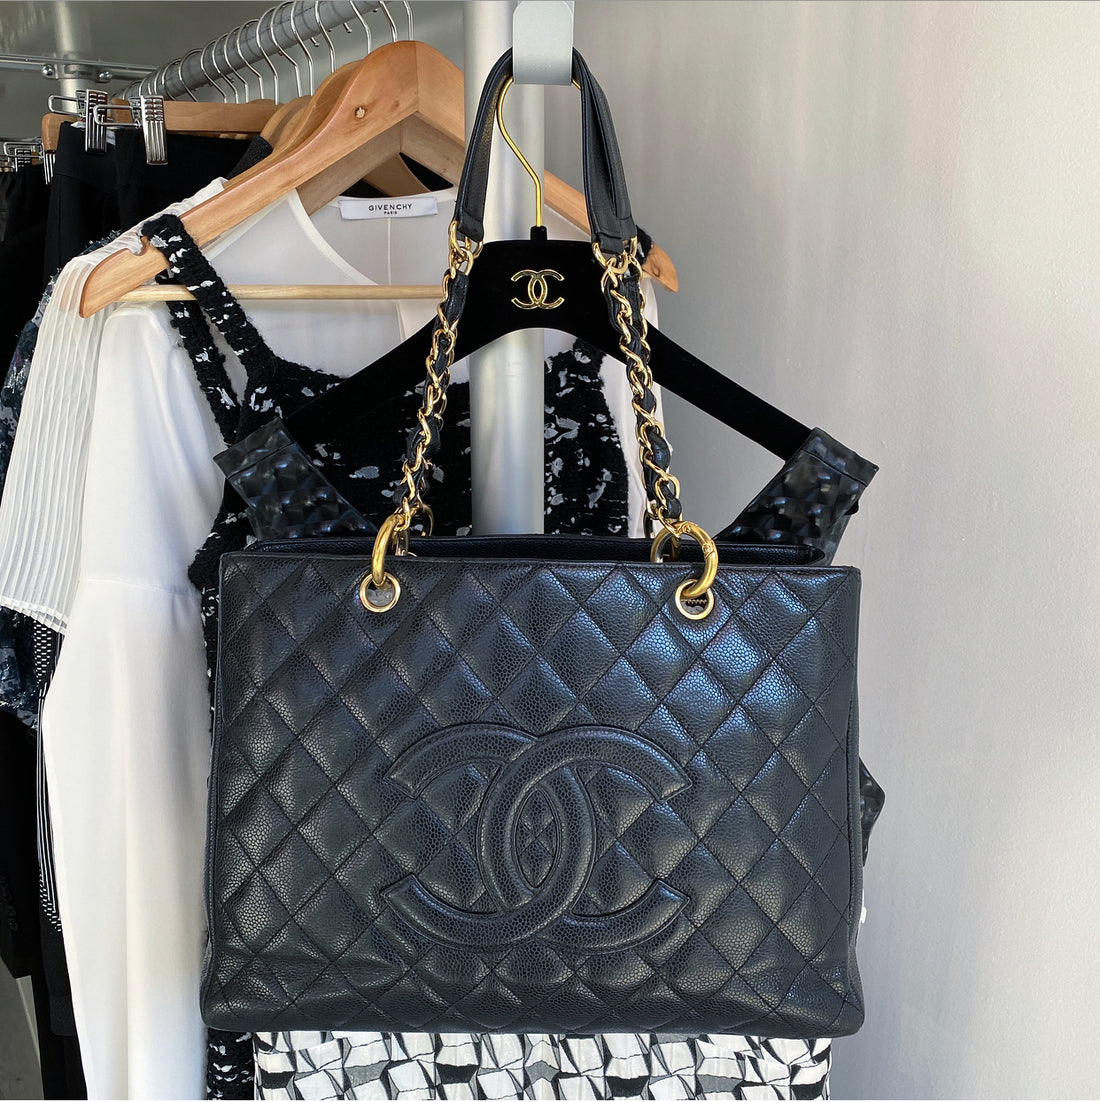 Chanel Grand Shopper Tote Beige - Caviar Leather